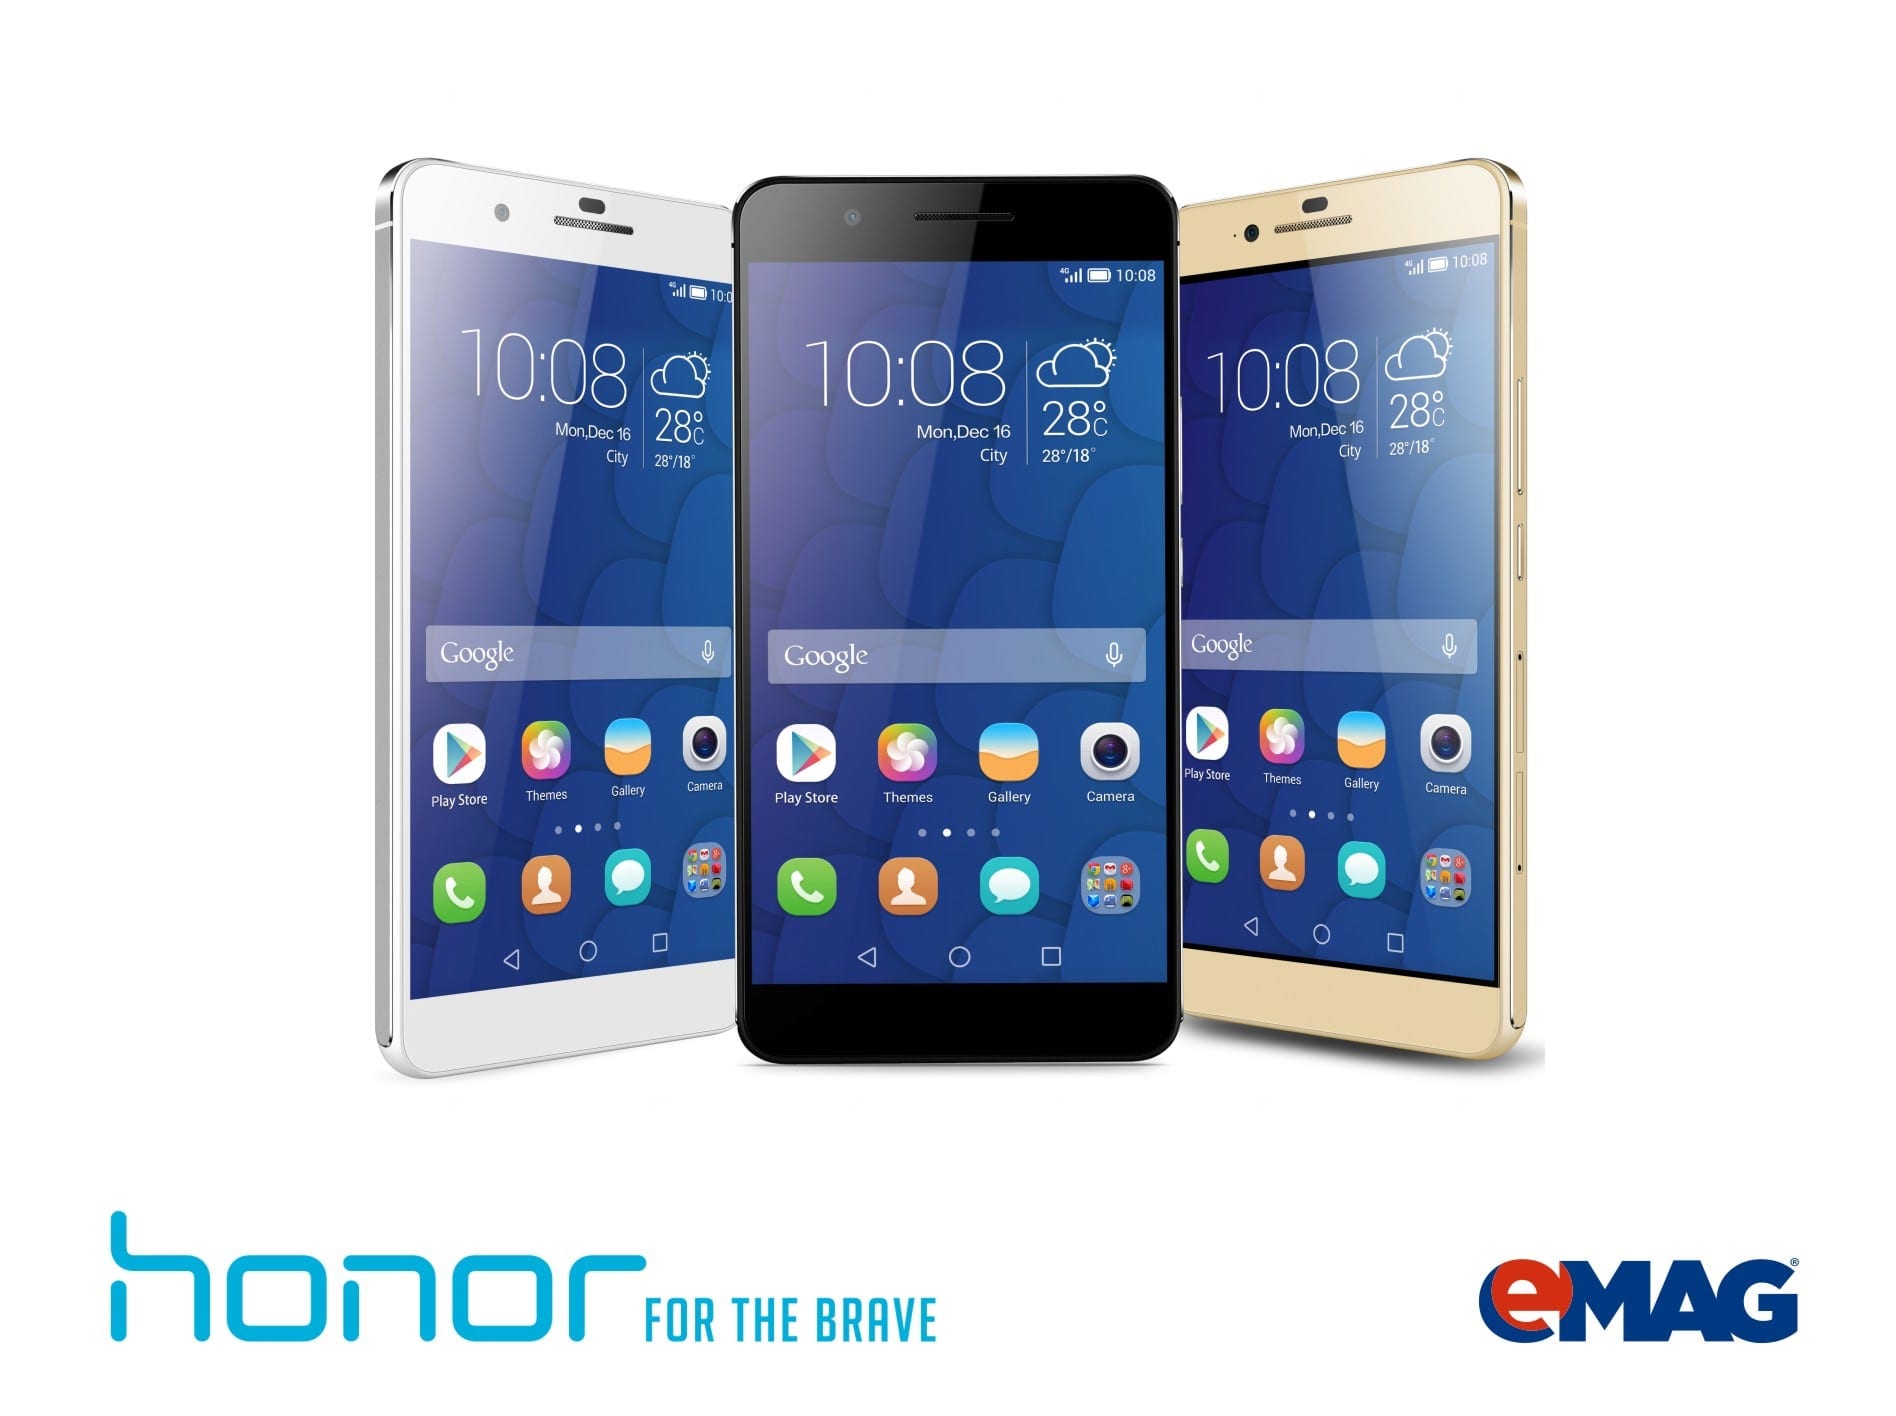 Huawei lansează noua gamă de smartphone-uri Honor, în exclusivitate la eMAG